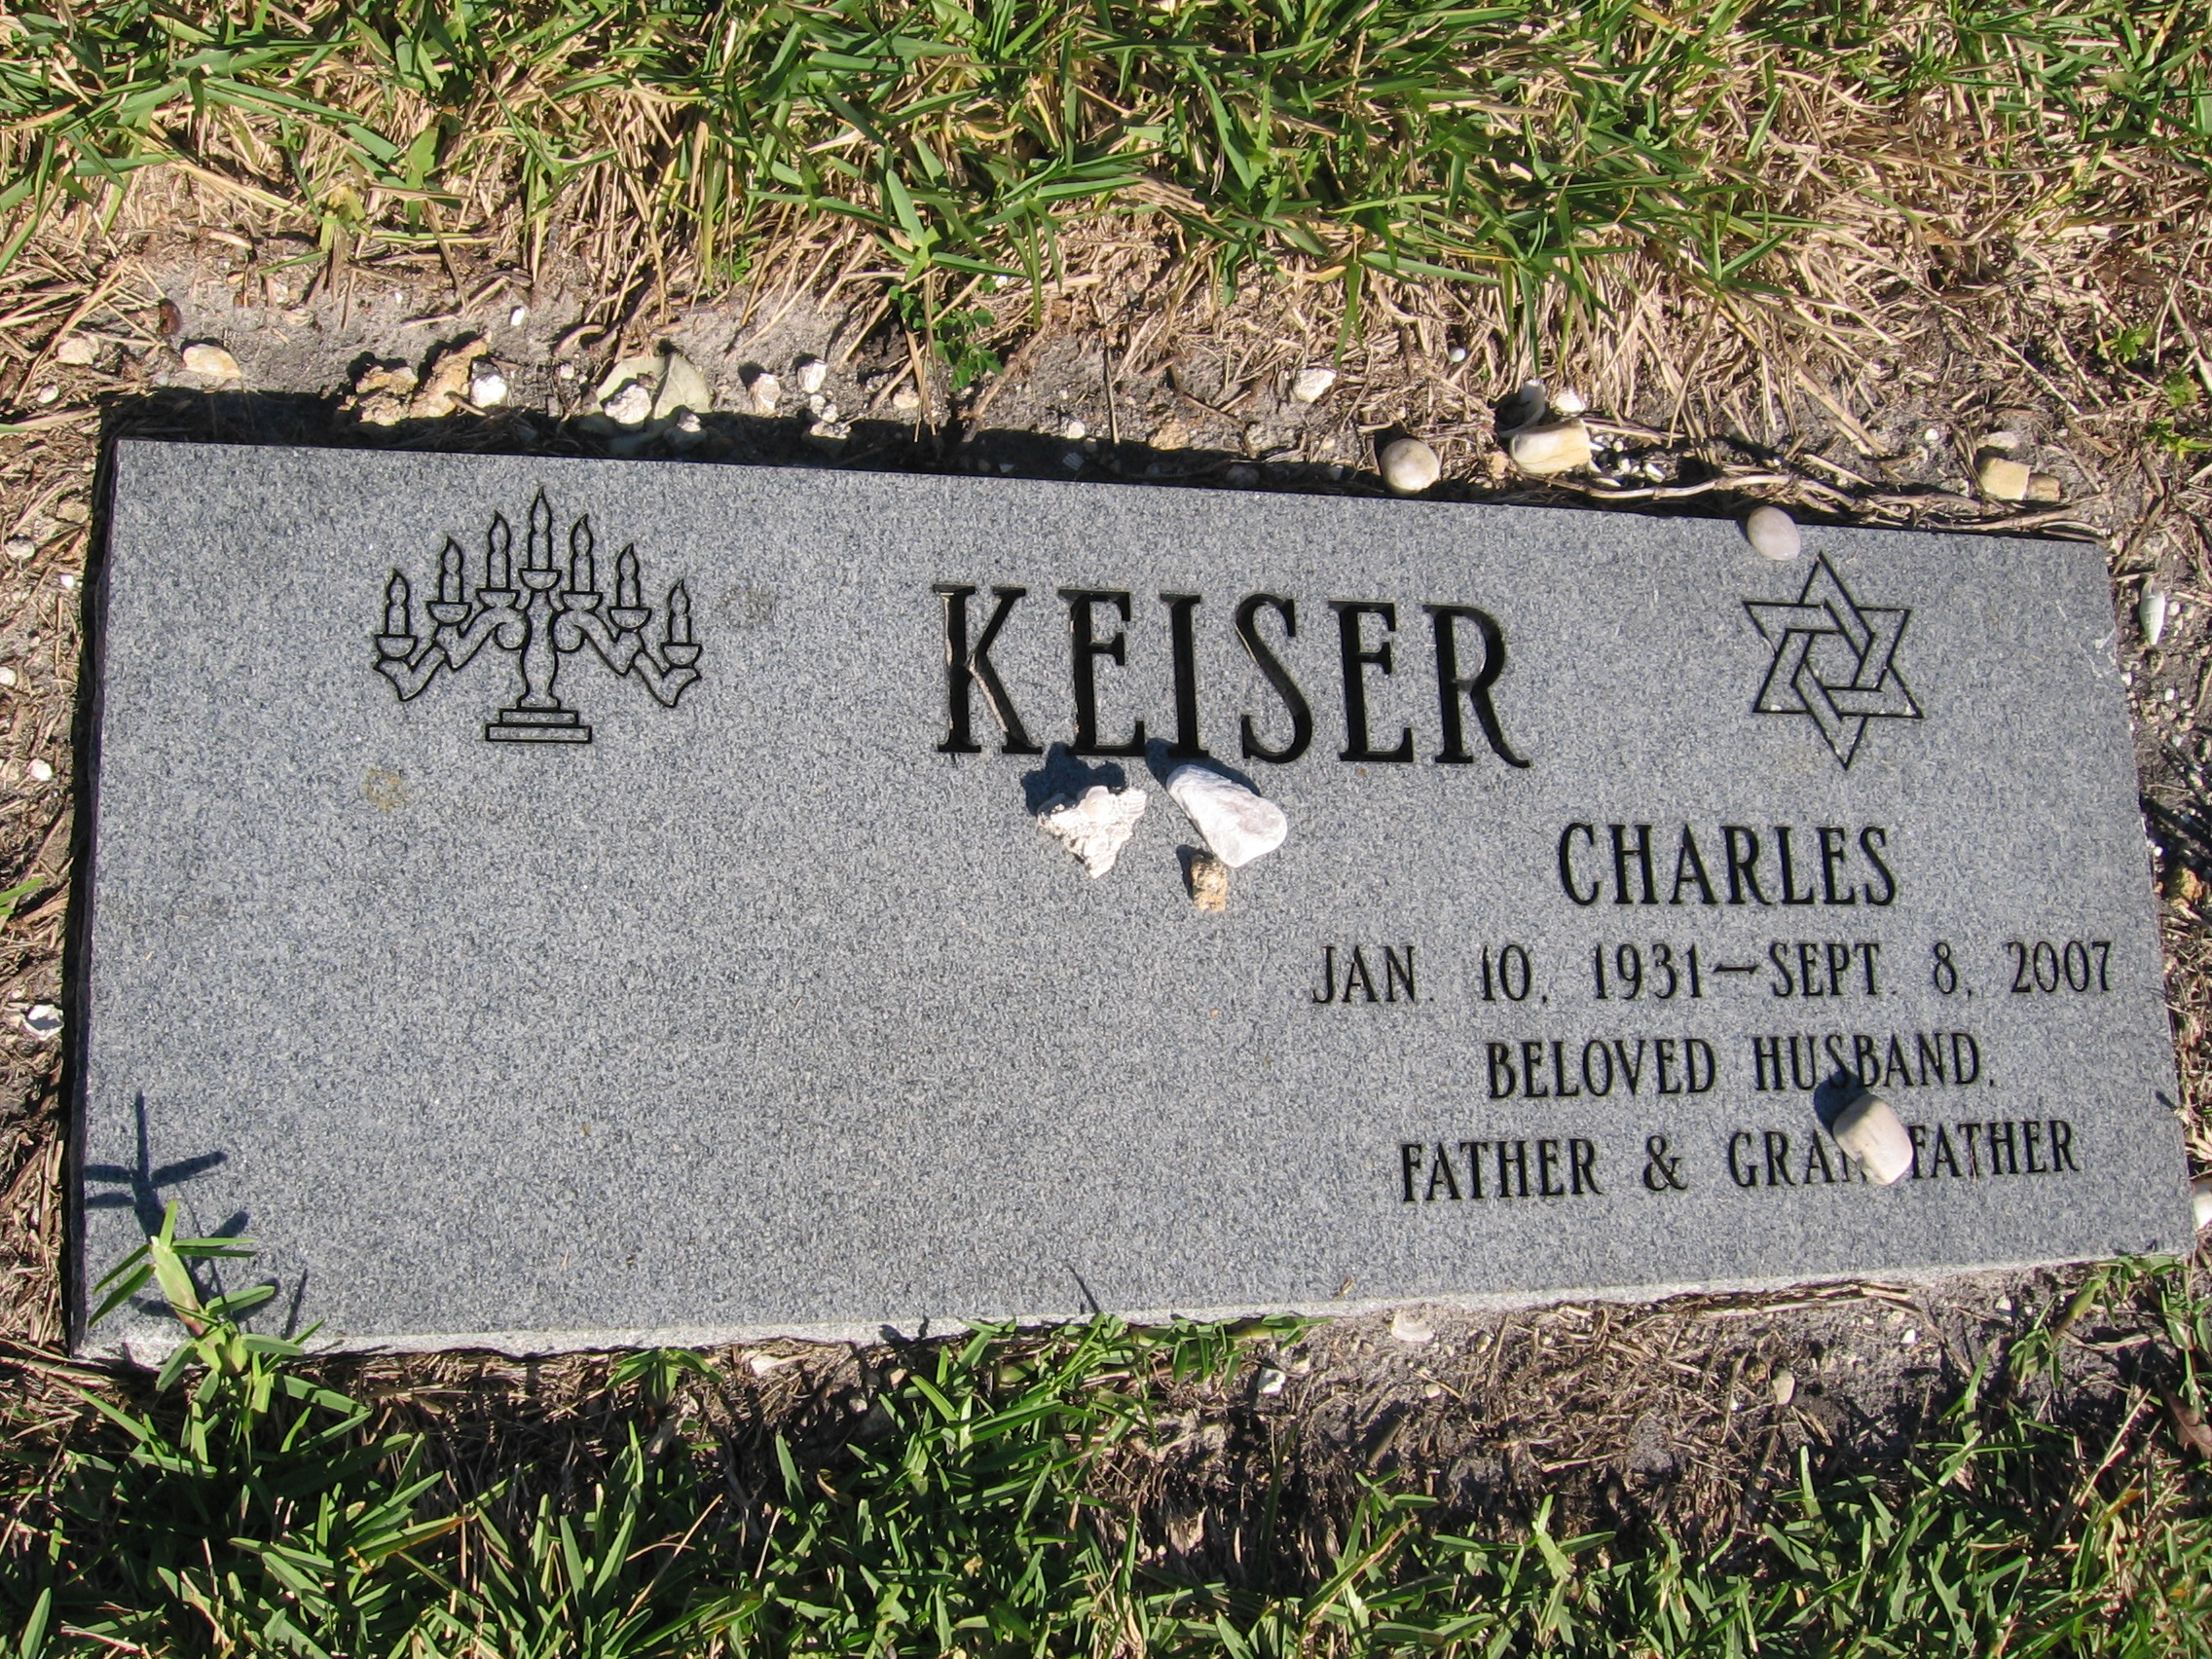 Charles Keiser